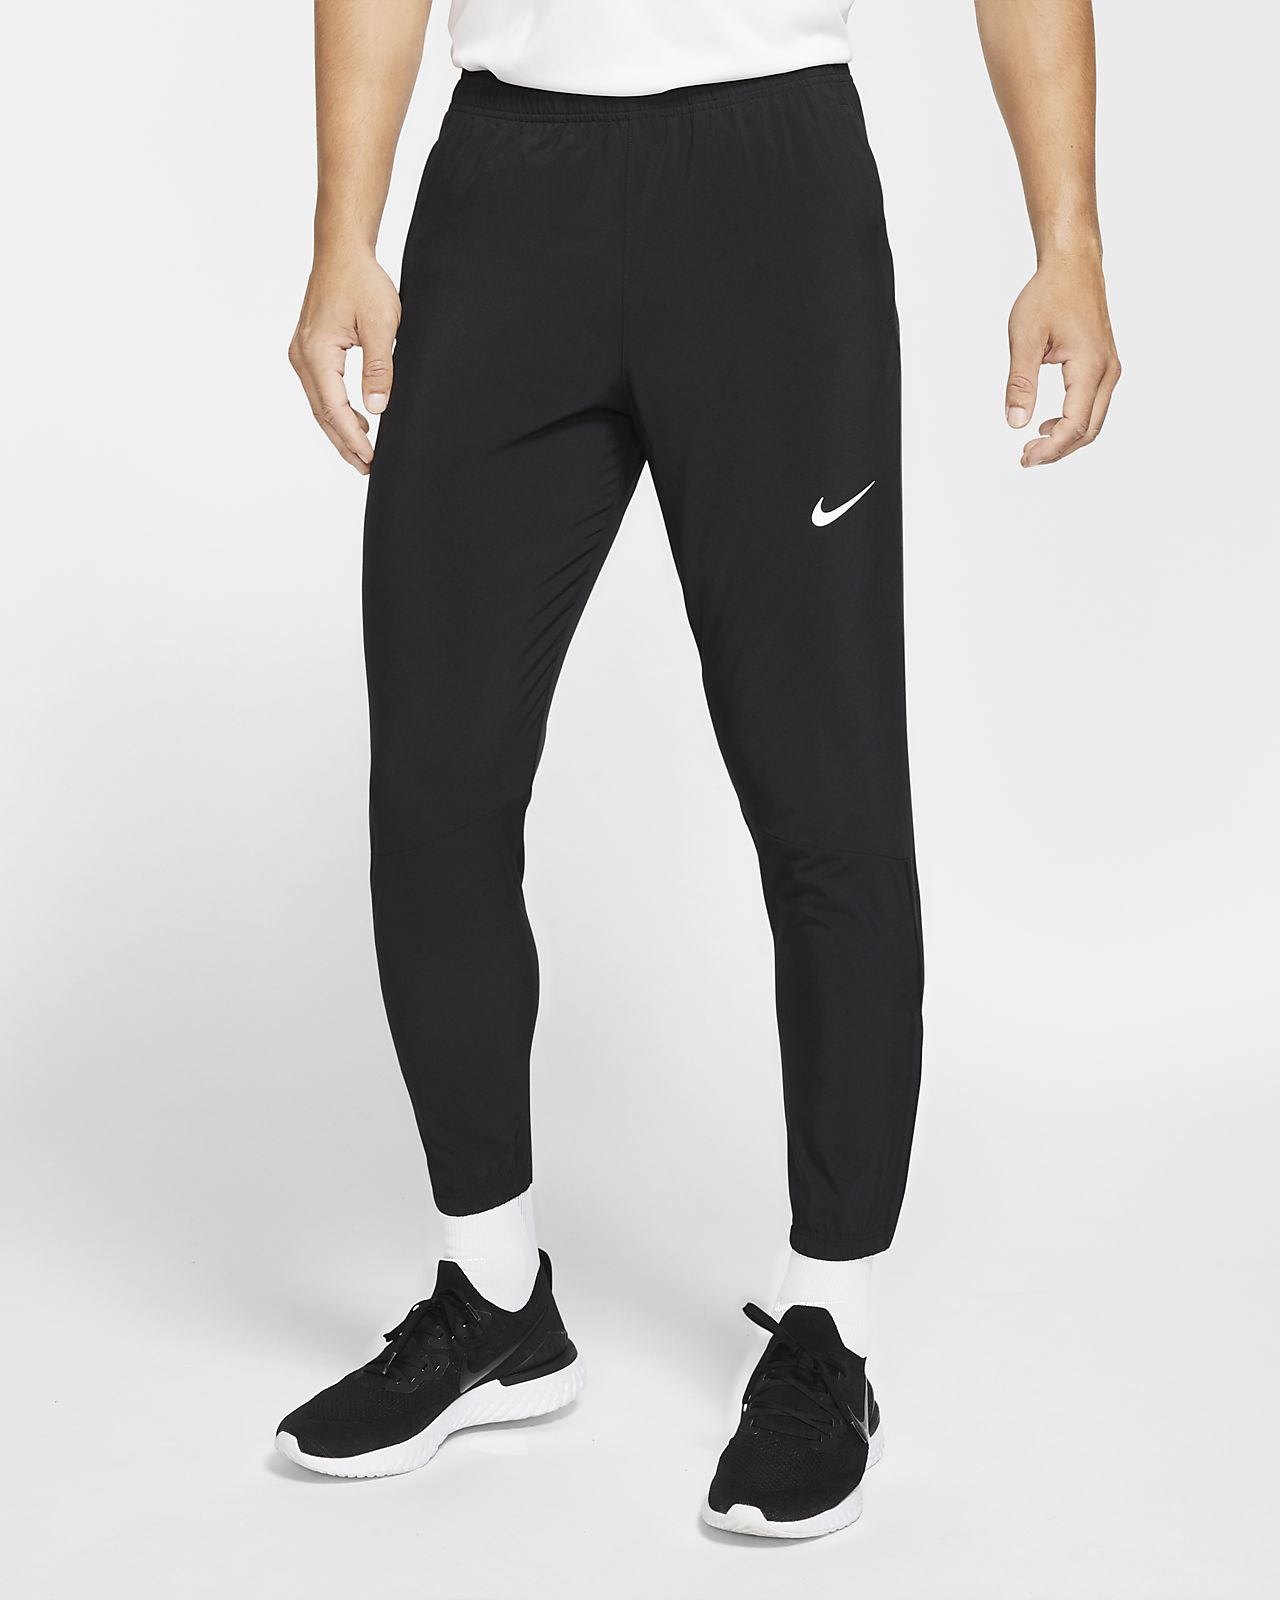 Pantalones tejidos de running para hombre Nike Essential. Nike CL